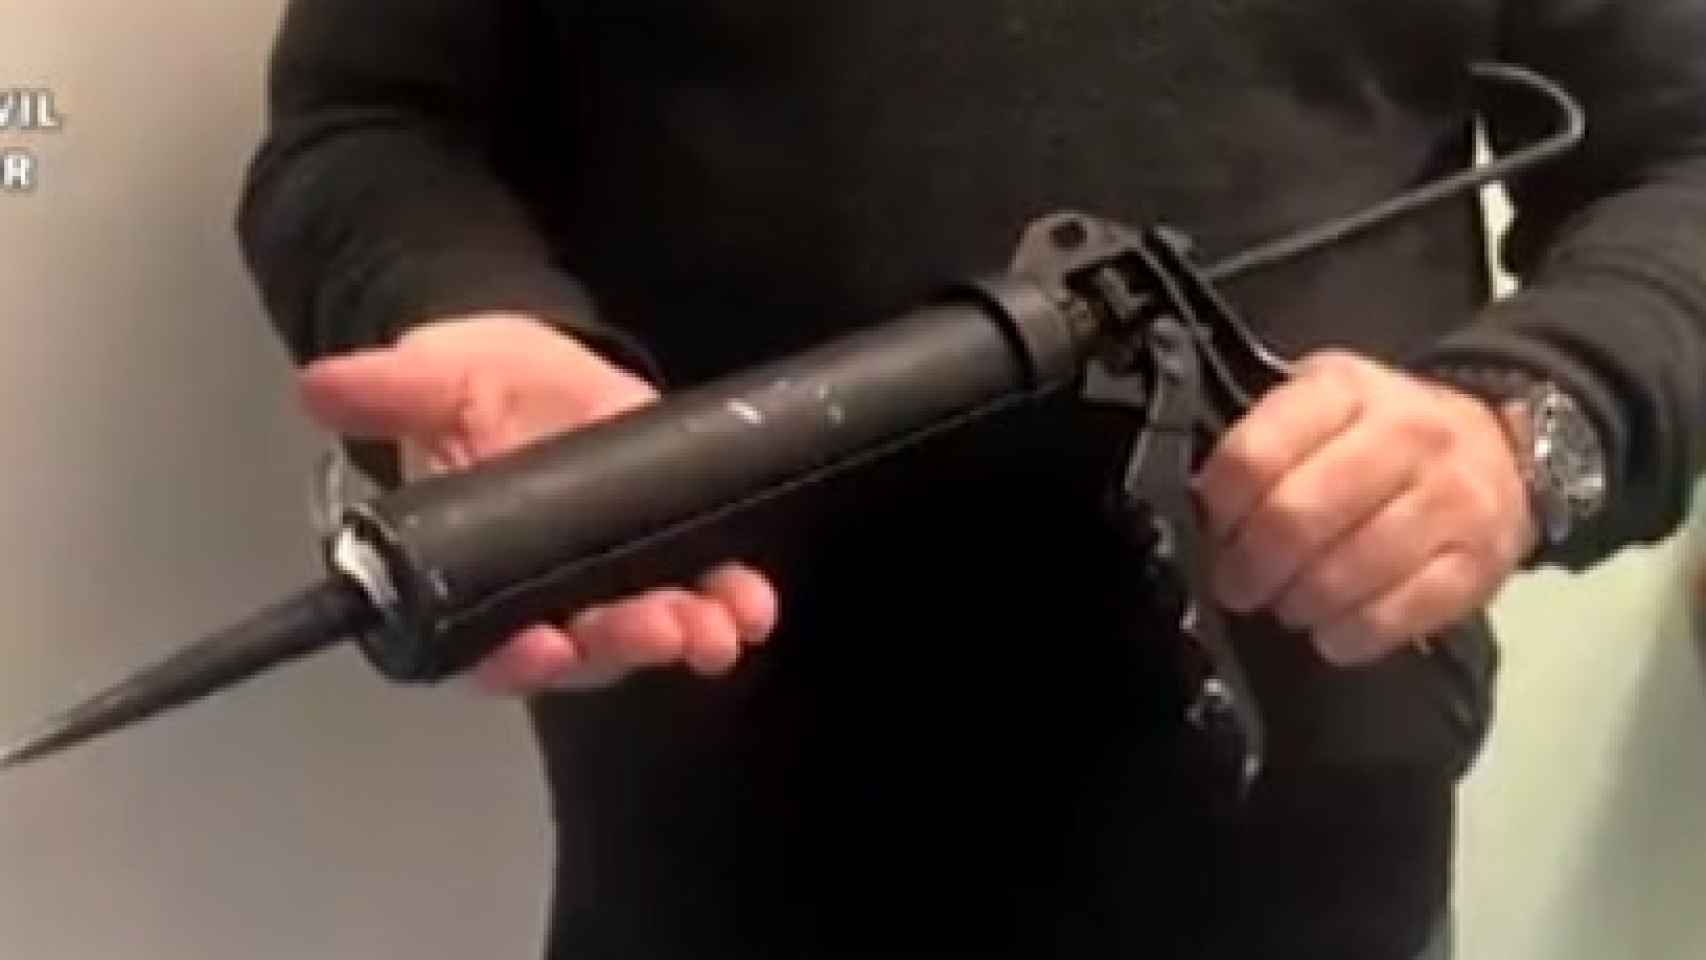 La falsa arma de fuego, en realidad, es una pistola de silicona pintada de negro.